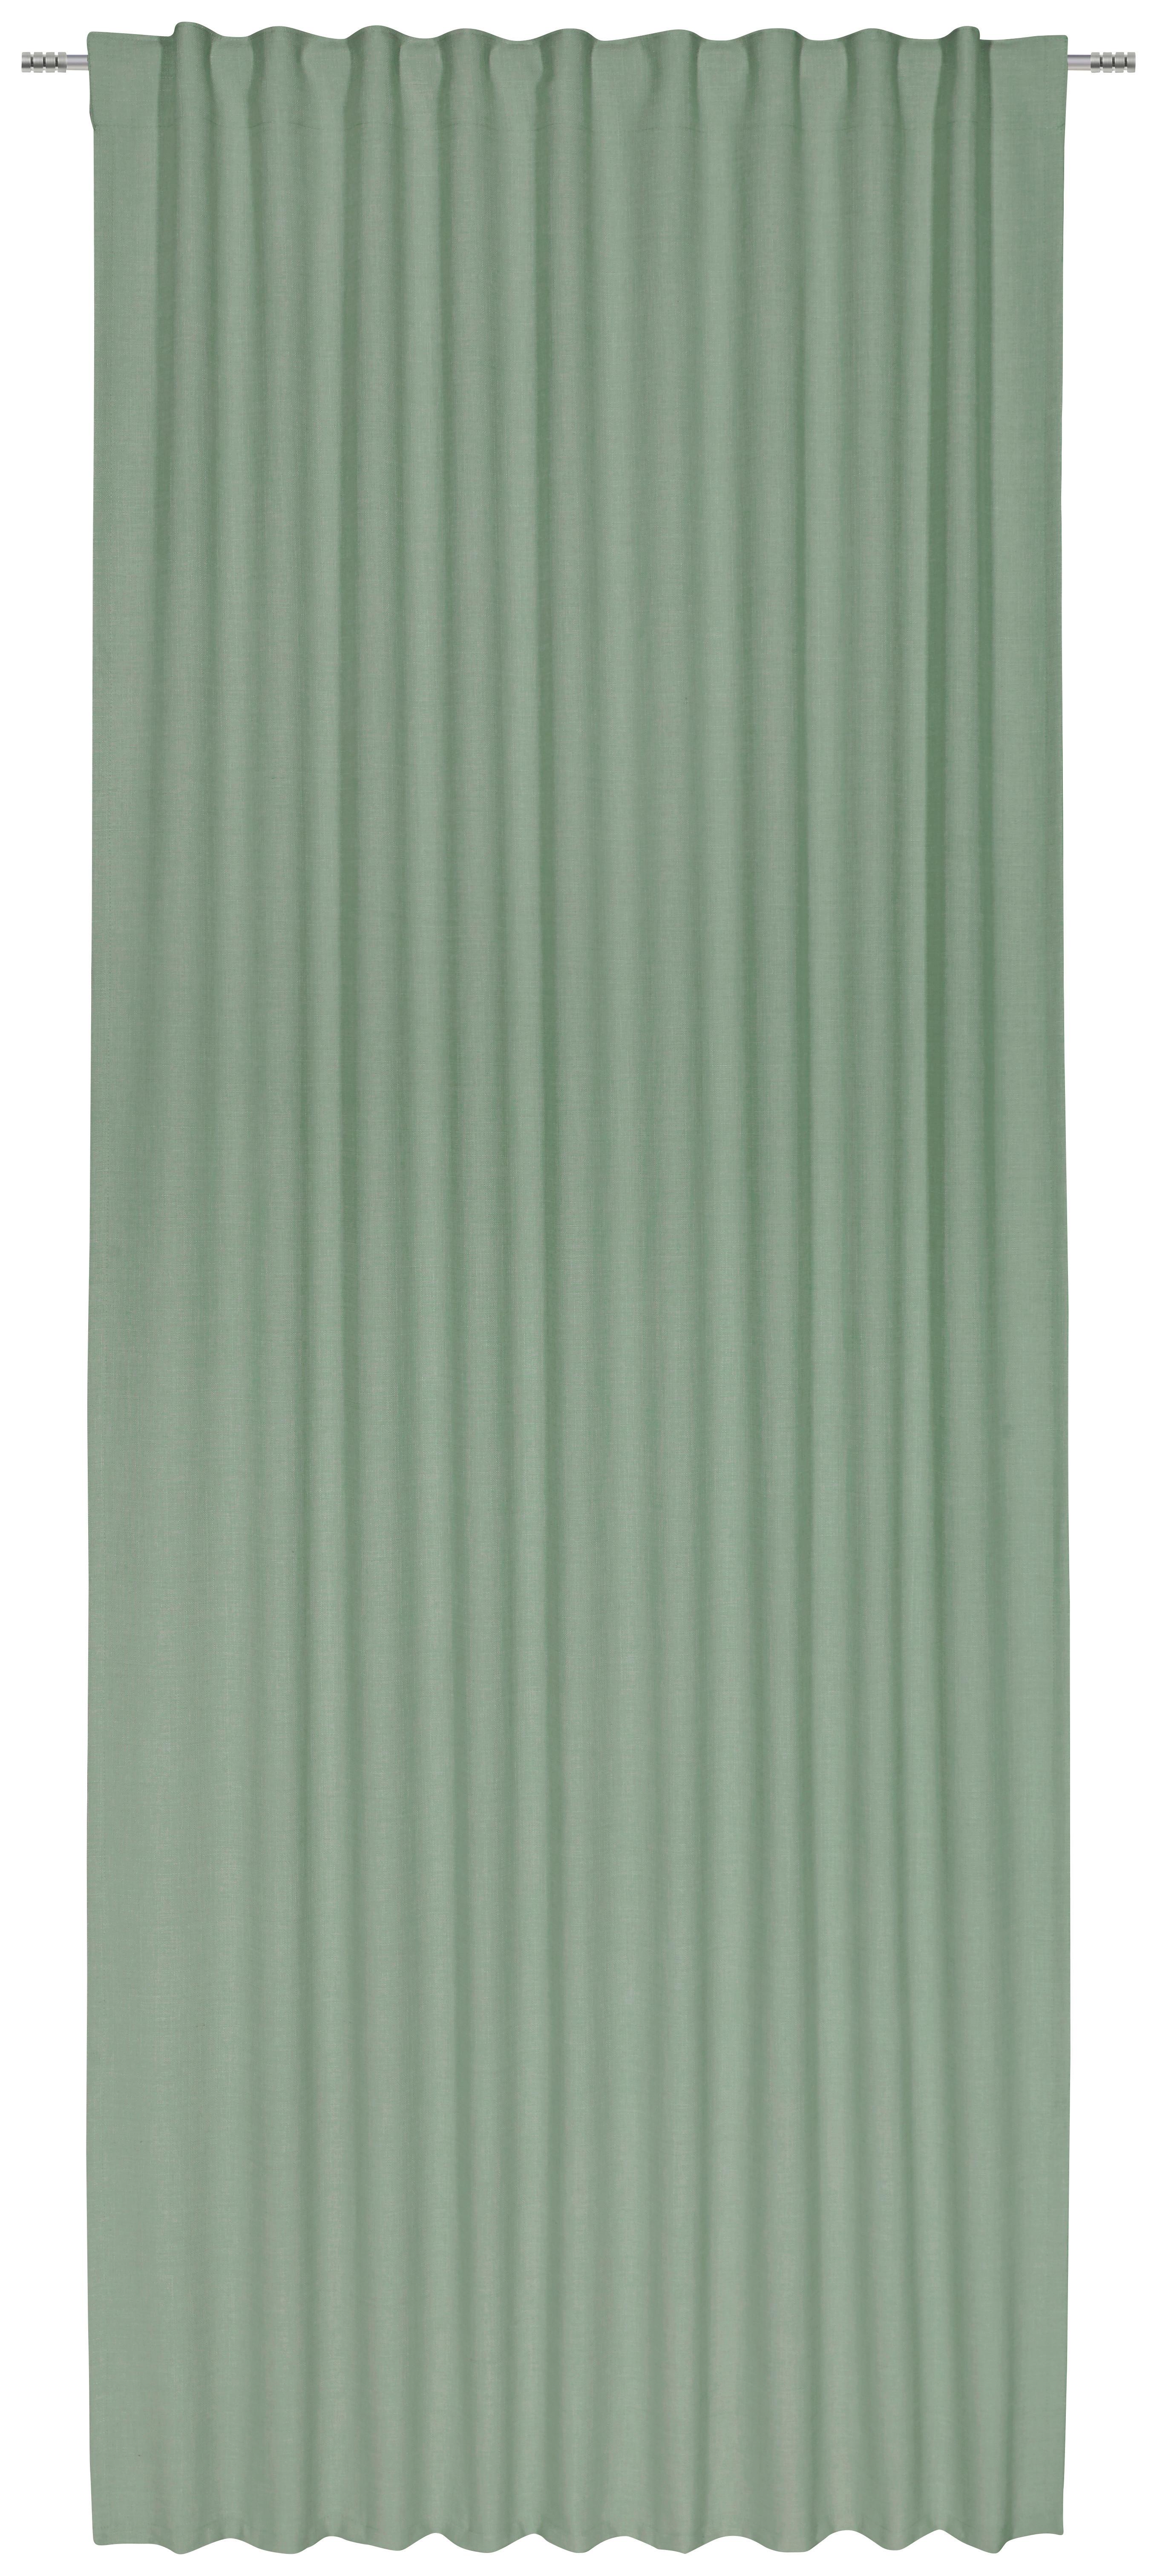 Závěs Leo, 135/255cm, Zelená - olivově zelená, textil (135/255cm) - Premium Living